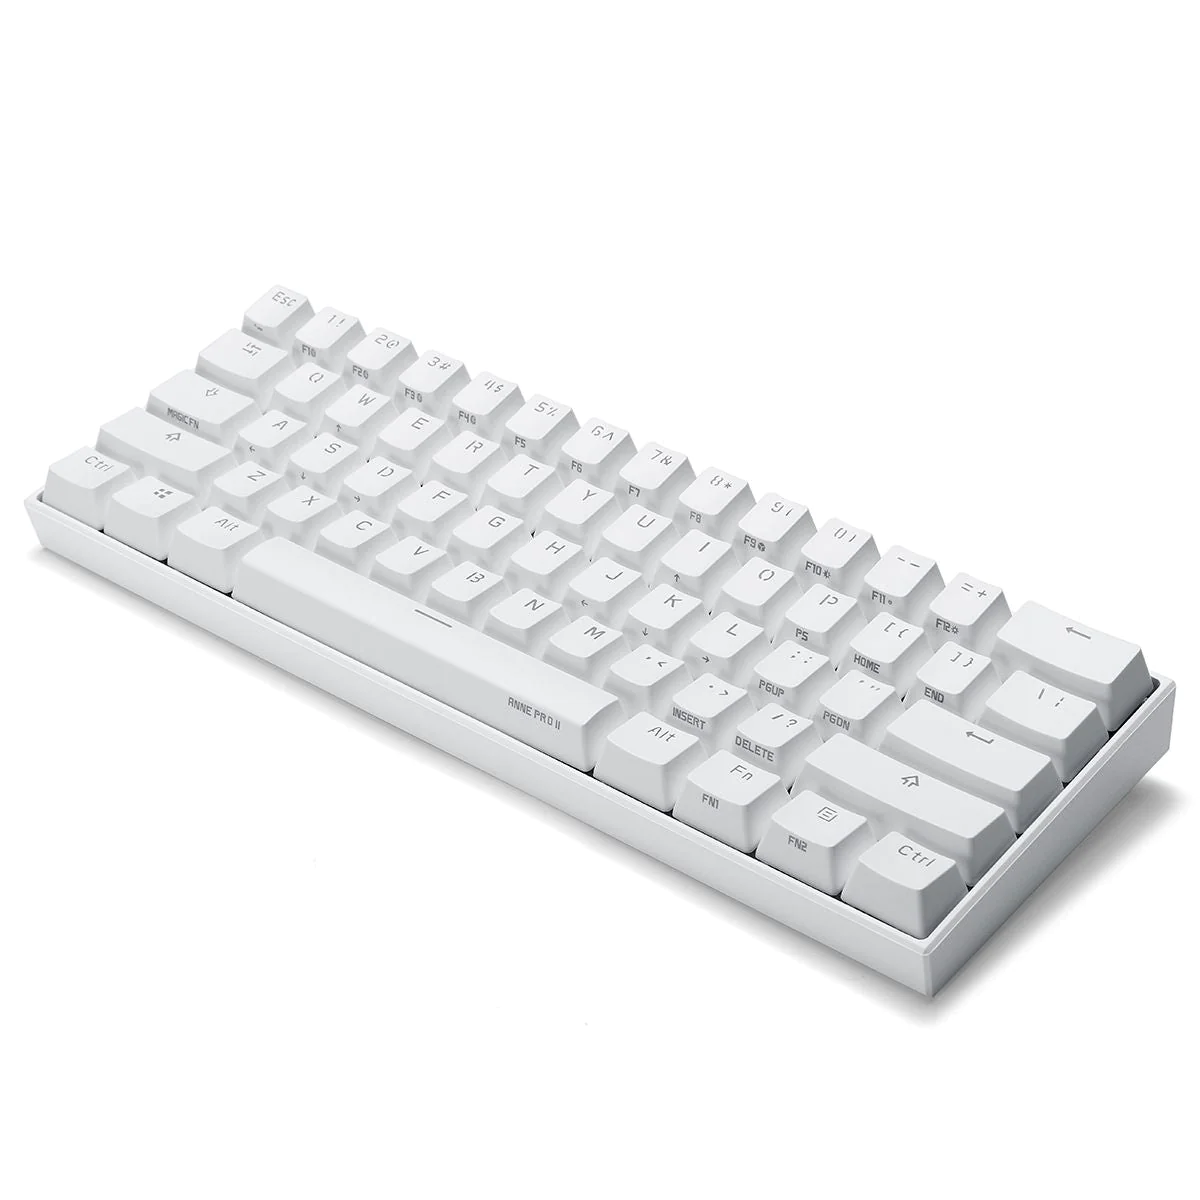 Anne Pro 2 Review! Best Wireless Mechanical Keyboard? 